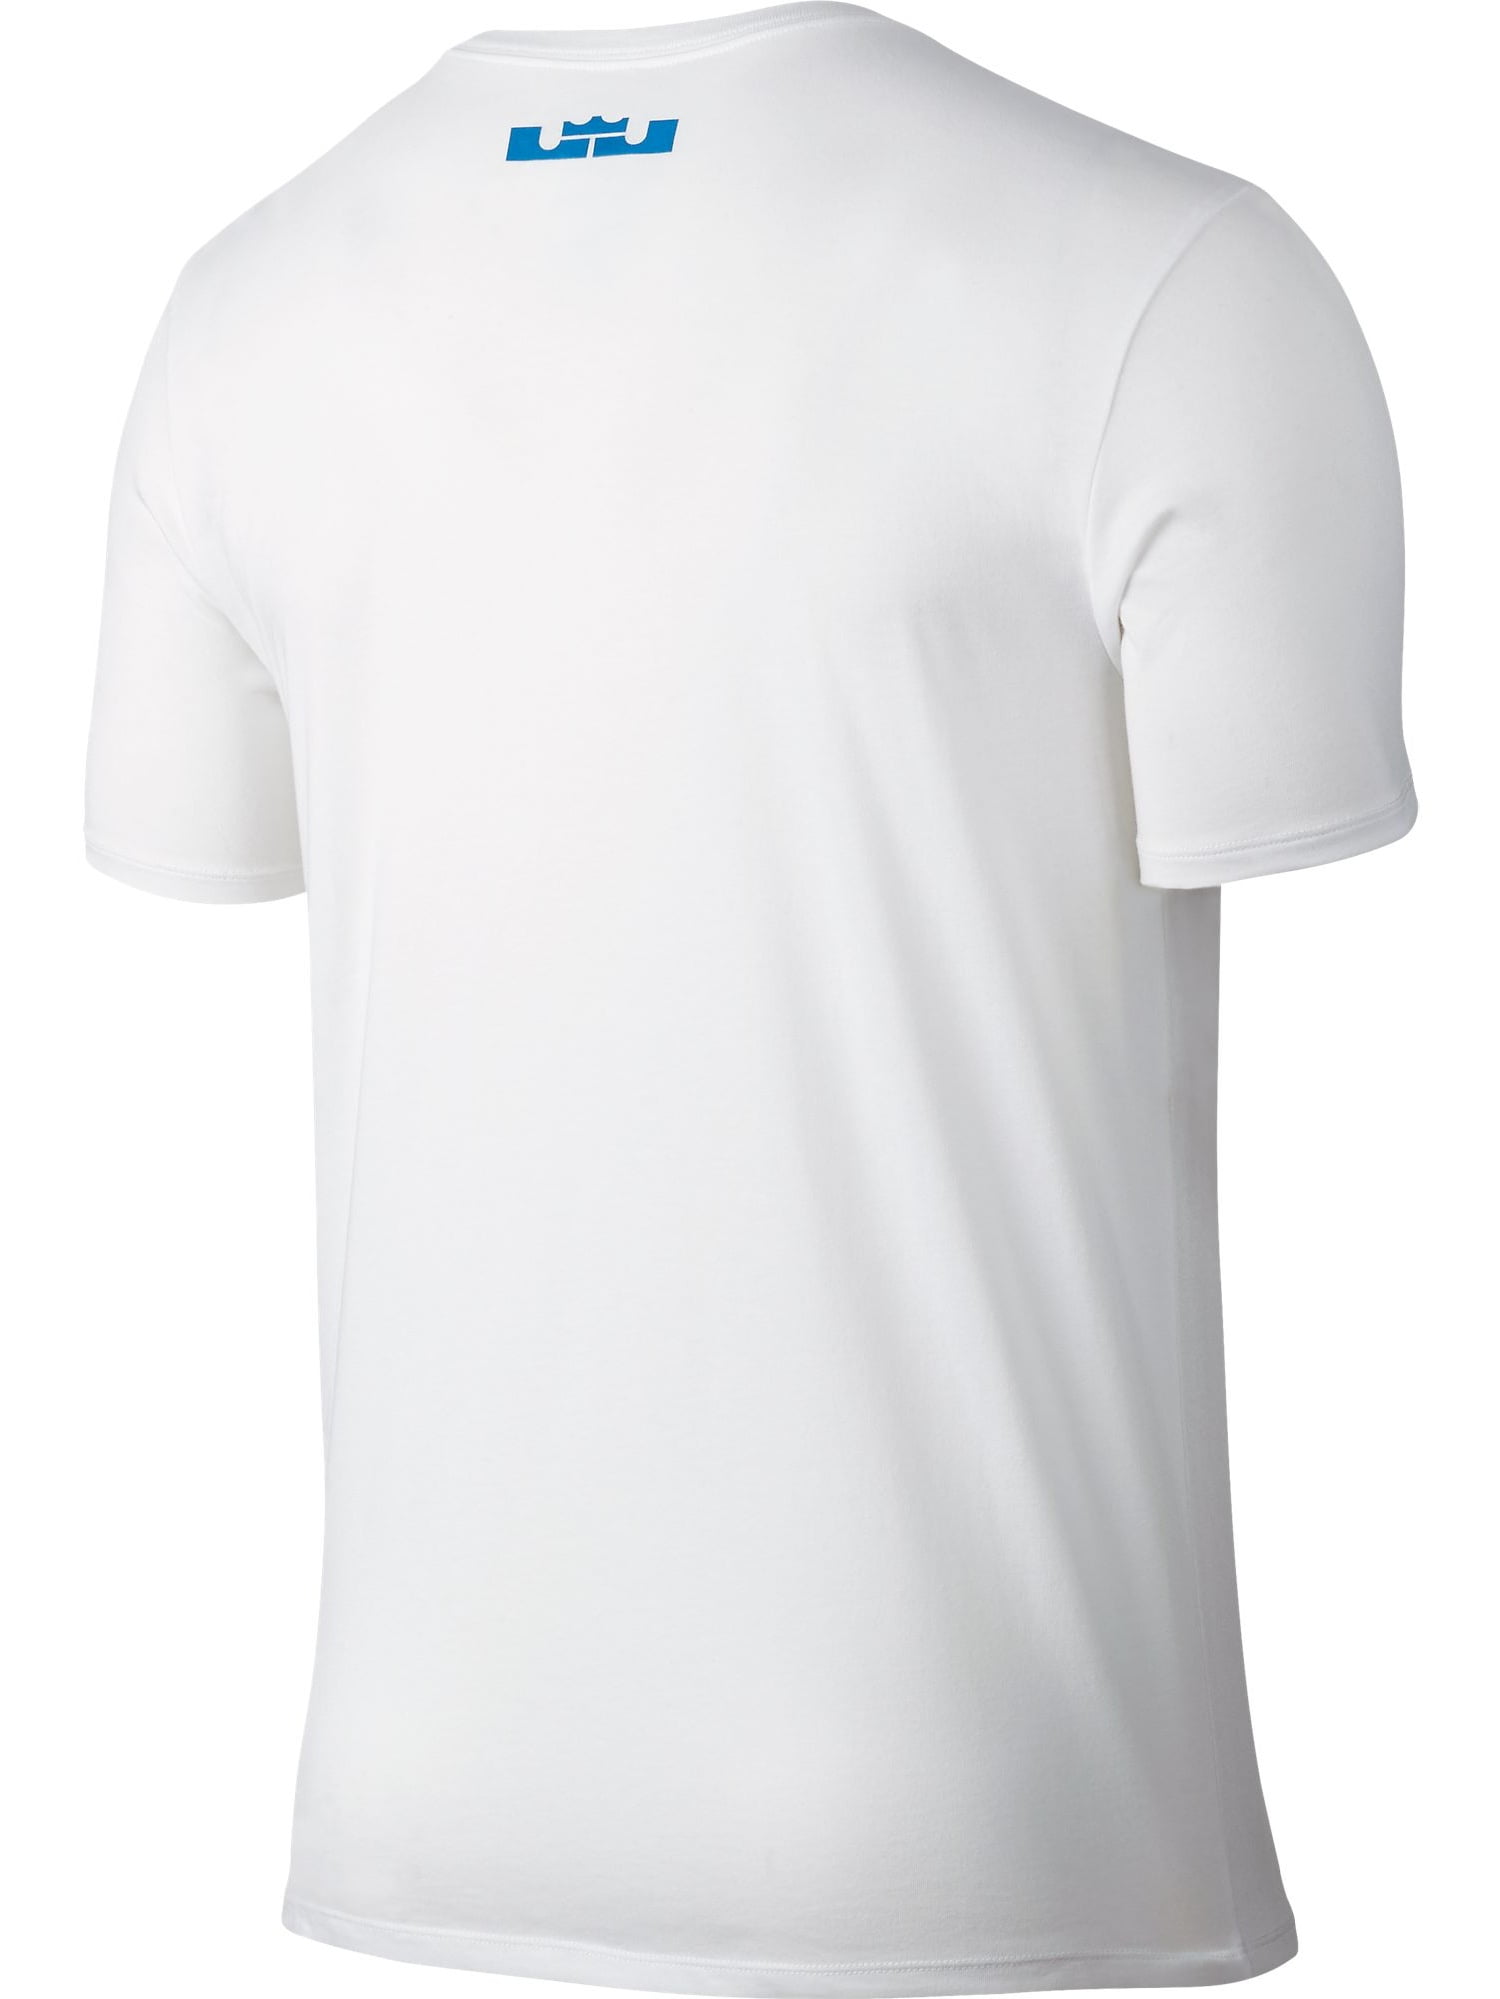 Nike, Shirts, Nike Lebron James Lion Logo Dri Fit T Shirt Sz Xxl